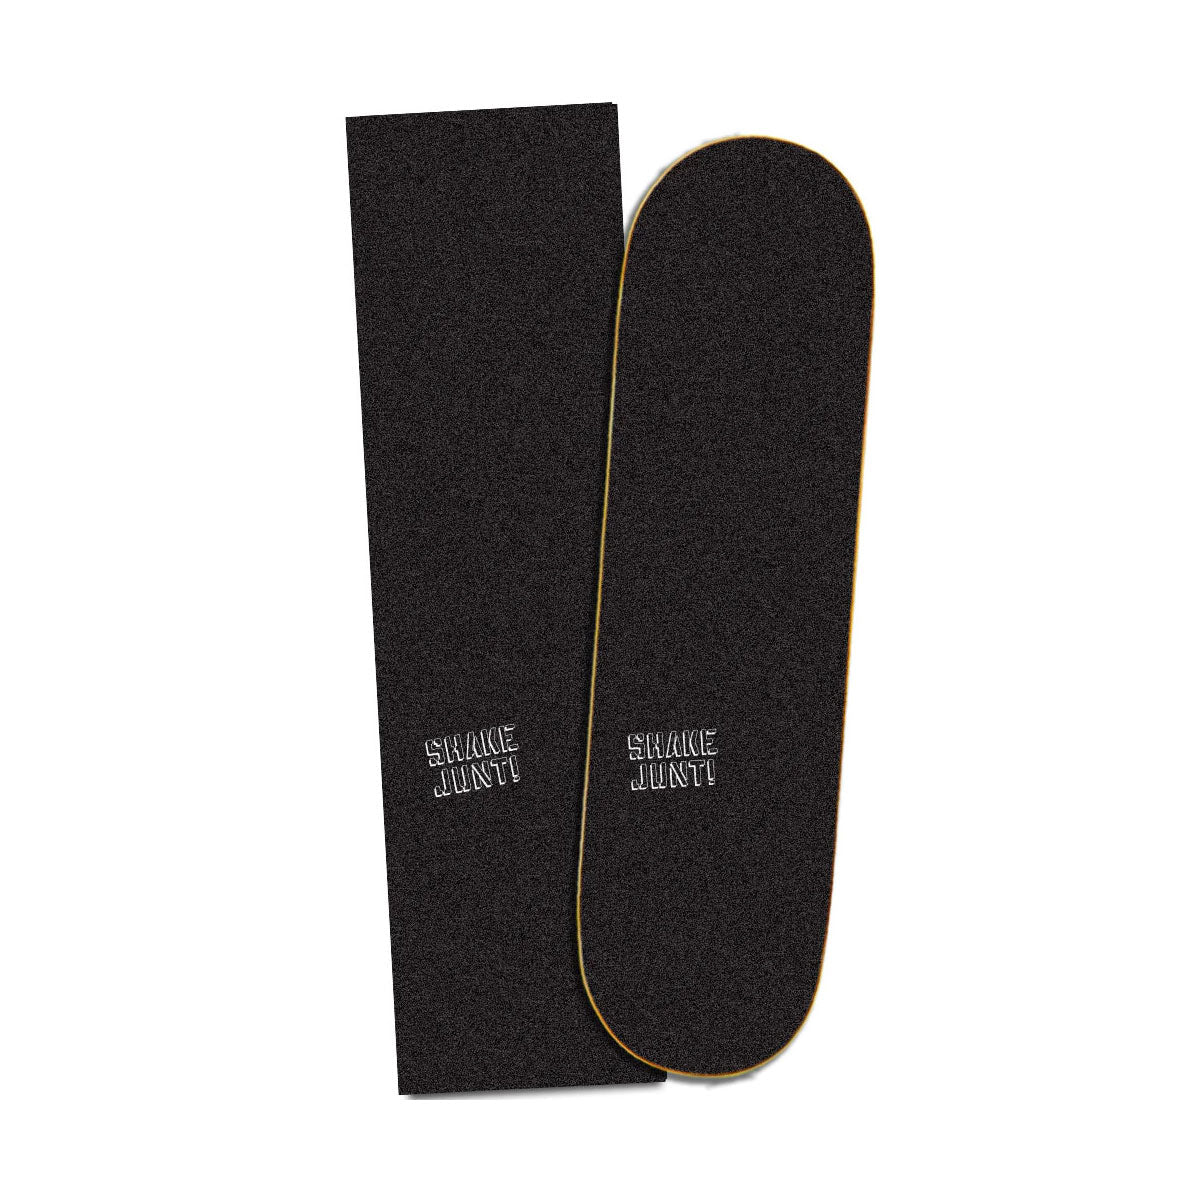 Shake Junt Lo Key Grip, black/white - Tiki Room Skateboards - 1